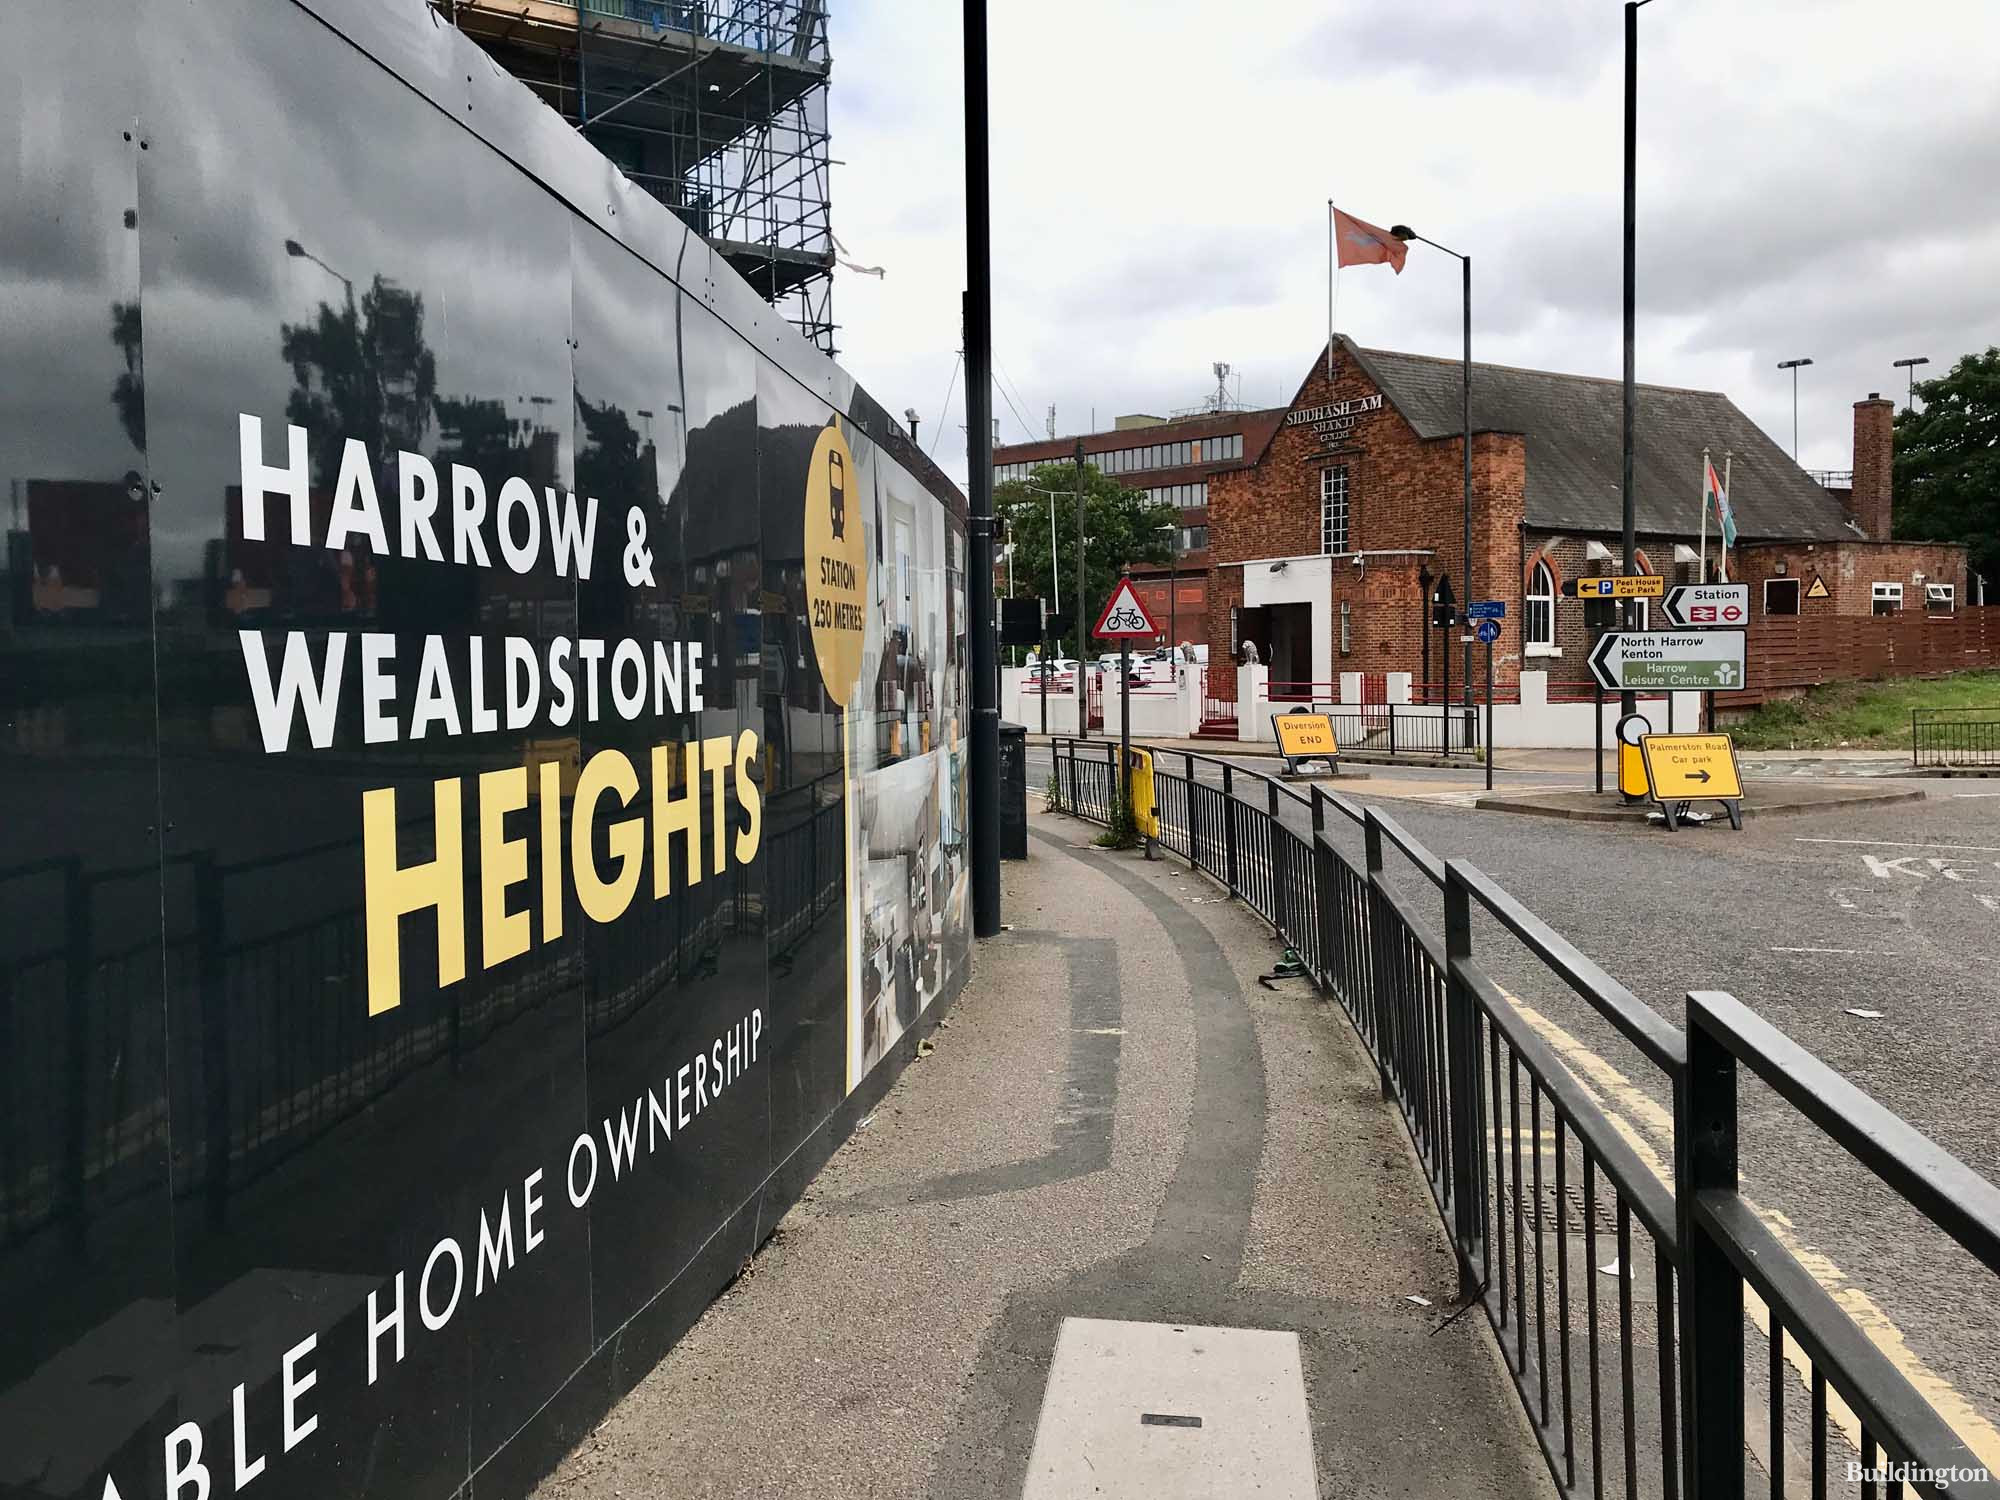 Harrow & Wealdstone Heights on Palmerston Road in Harrrow HA3.